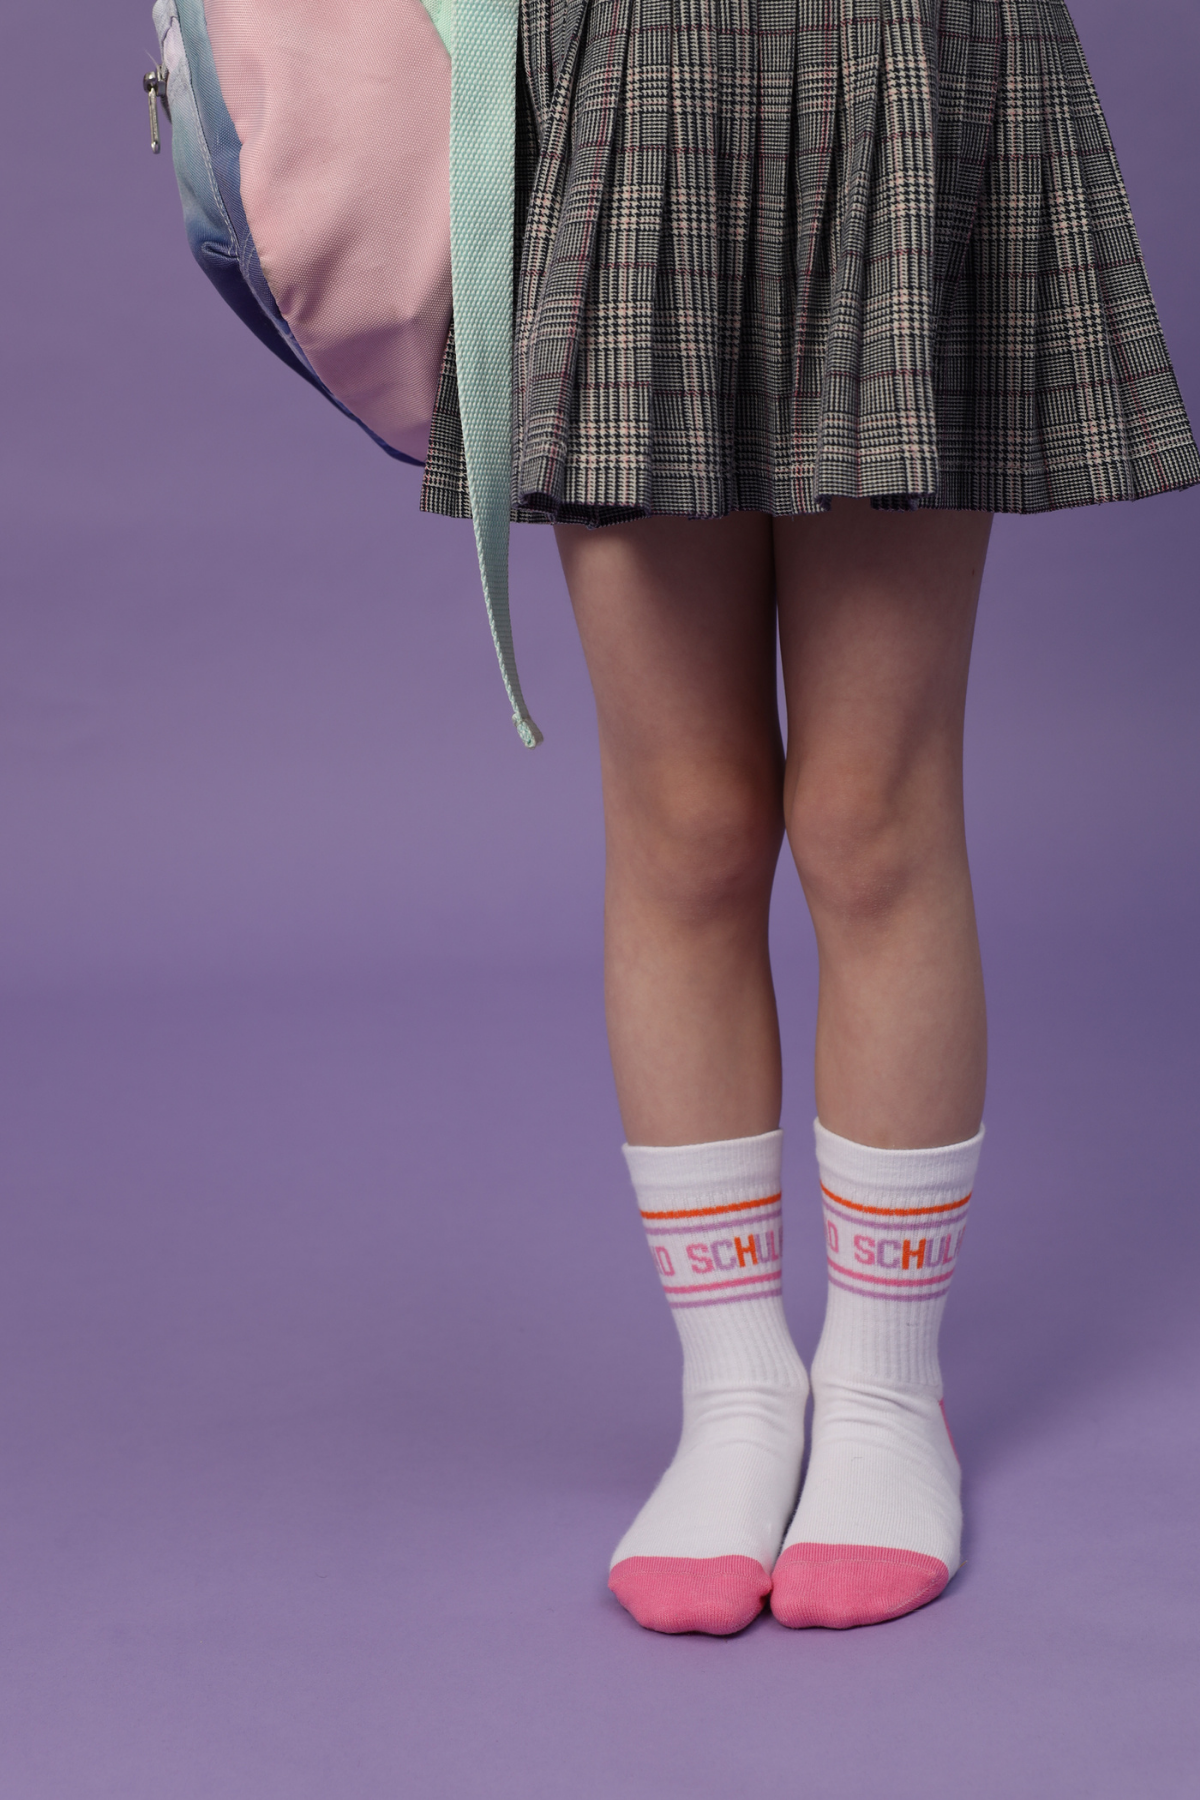 Socken "Schulkind" | verschiedene Farben